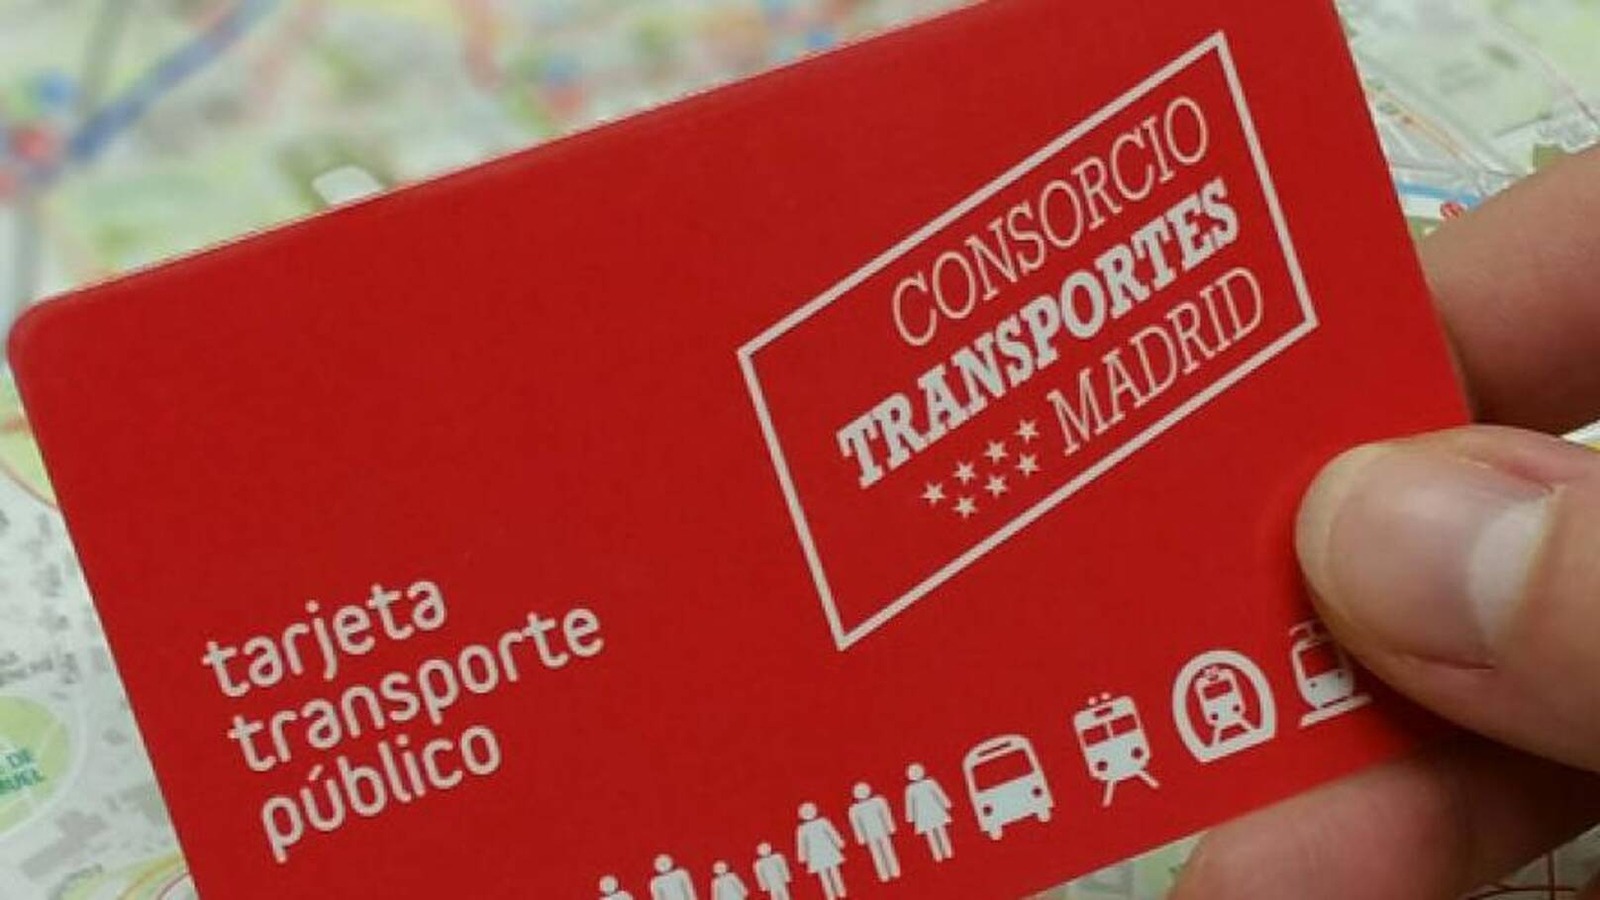 La nueva tarjeta virtual el transporte público madrileño podría ver la luz en el año 2023 - DIARIO DE